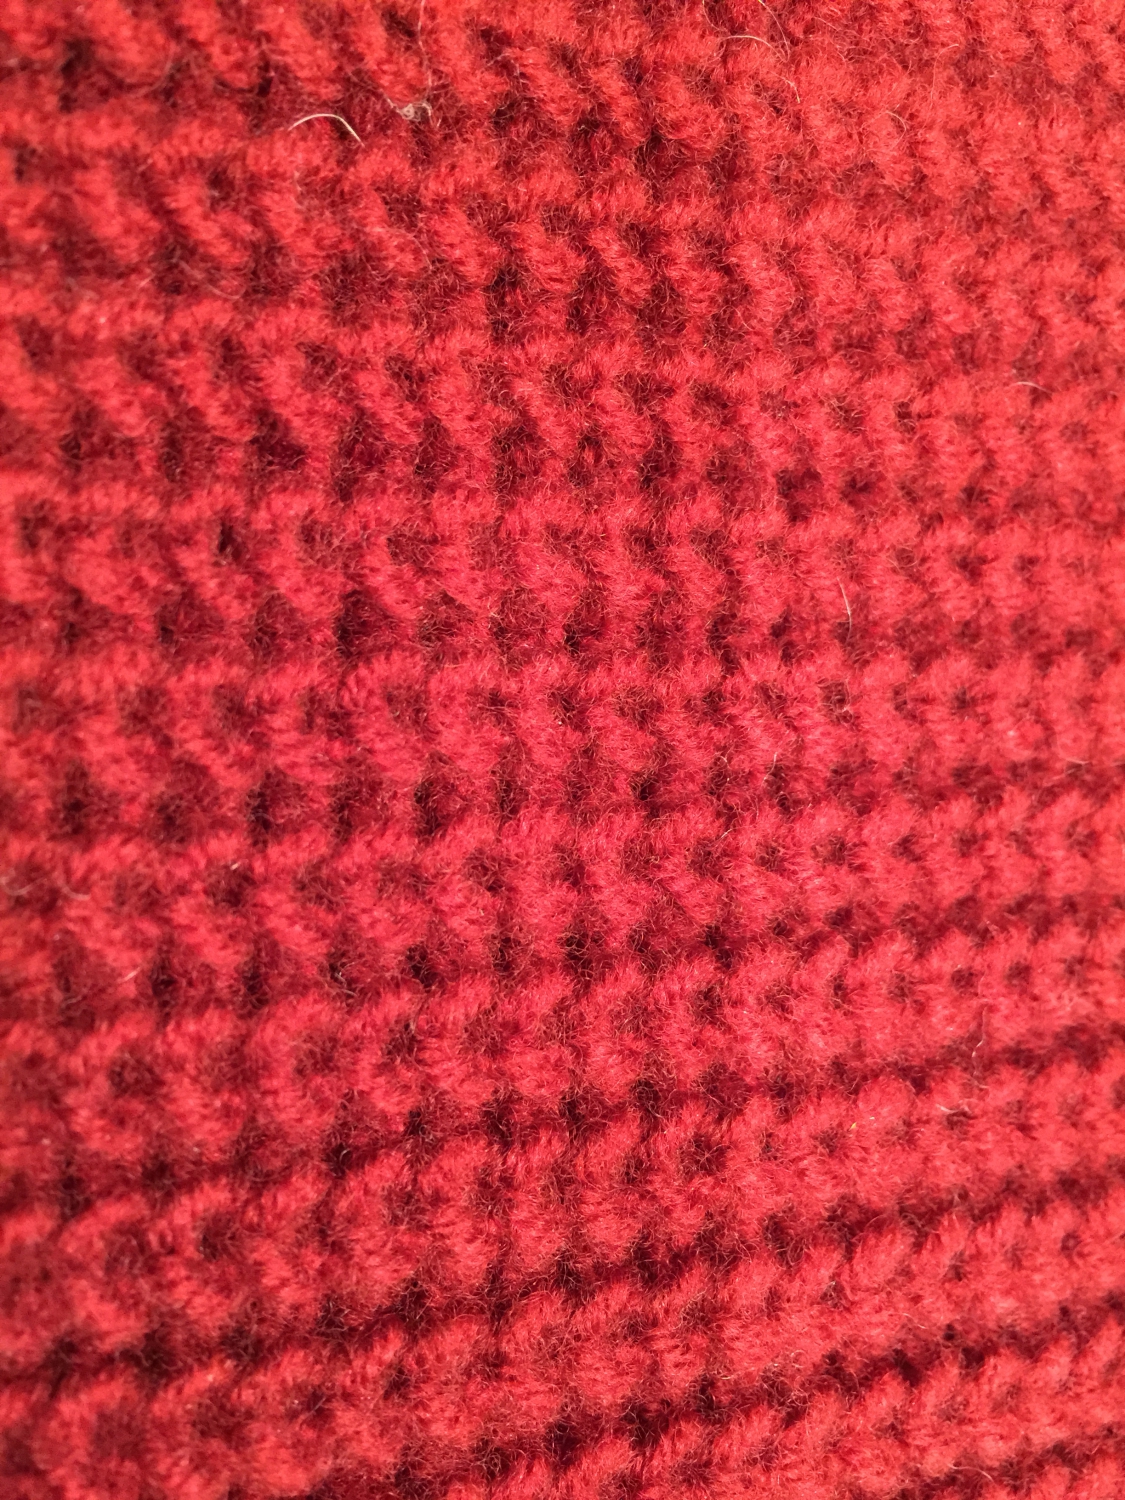 ニットの畦編み・両畦編み・片畦編みについて説明します。 | KNIT MAGAZINE